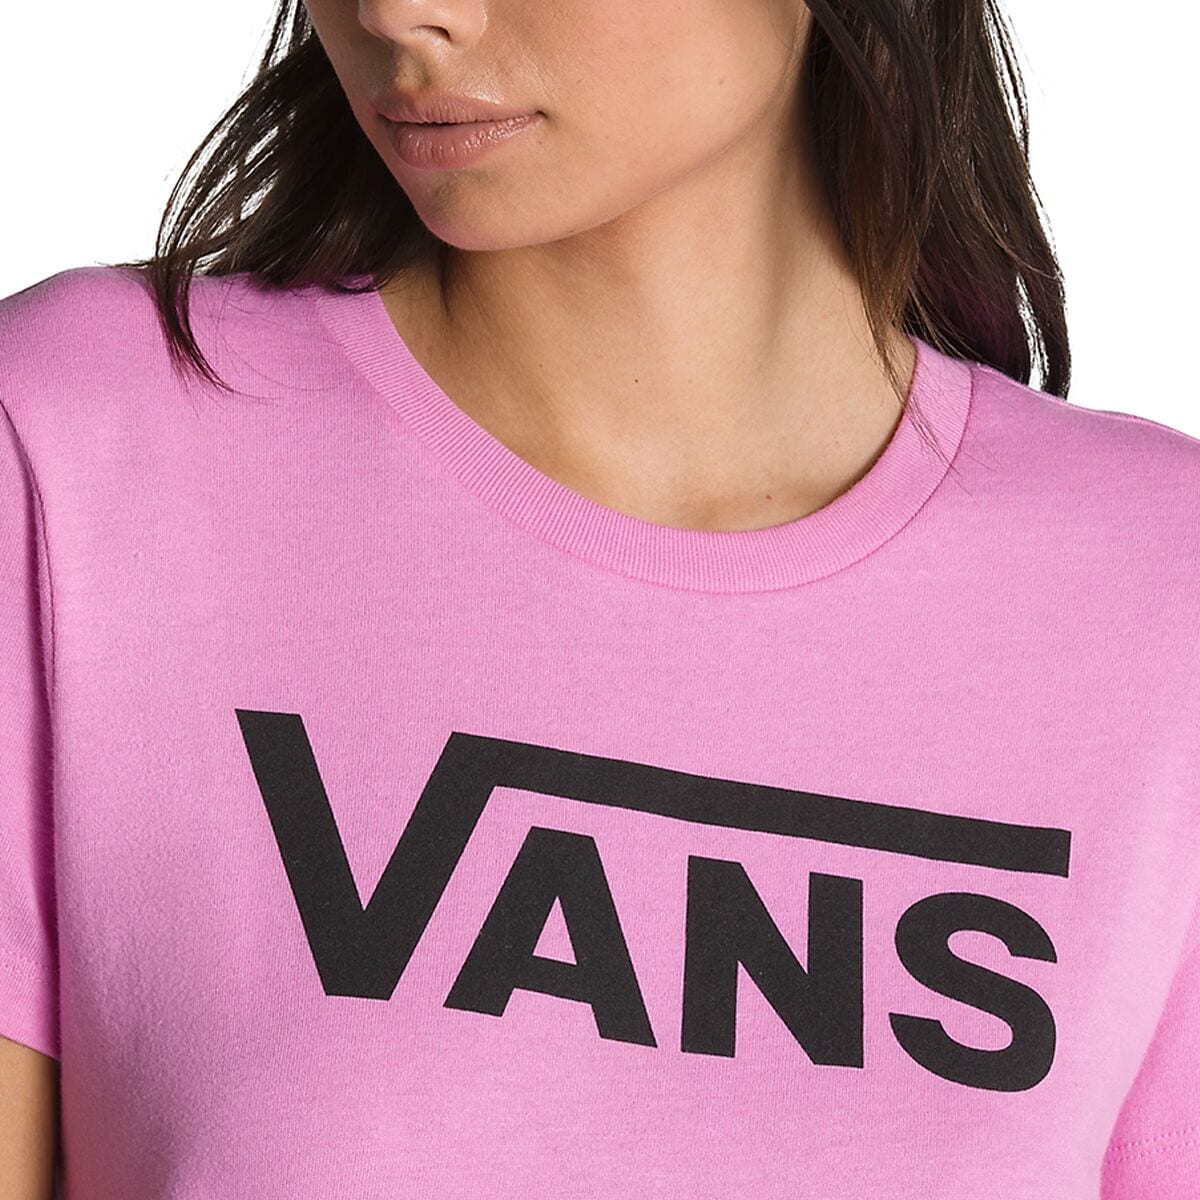 Vans Flying V - - T-Shirt Clothing Women\'s Crew